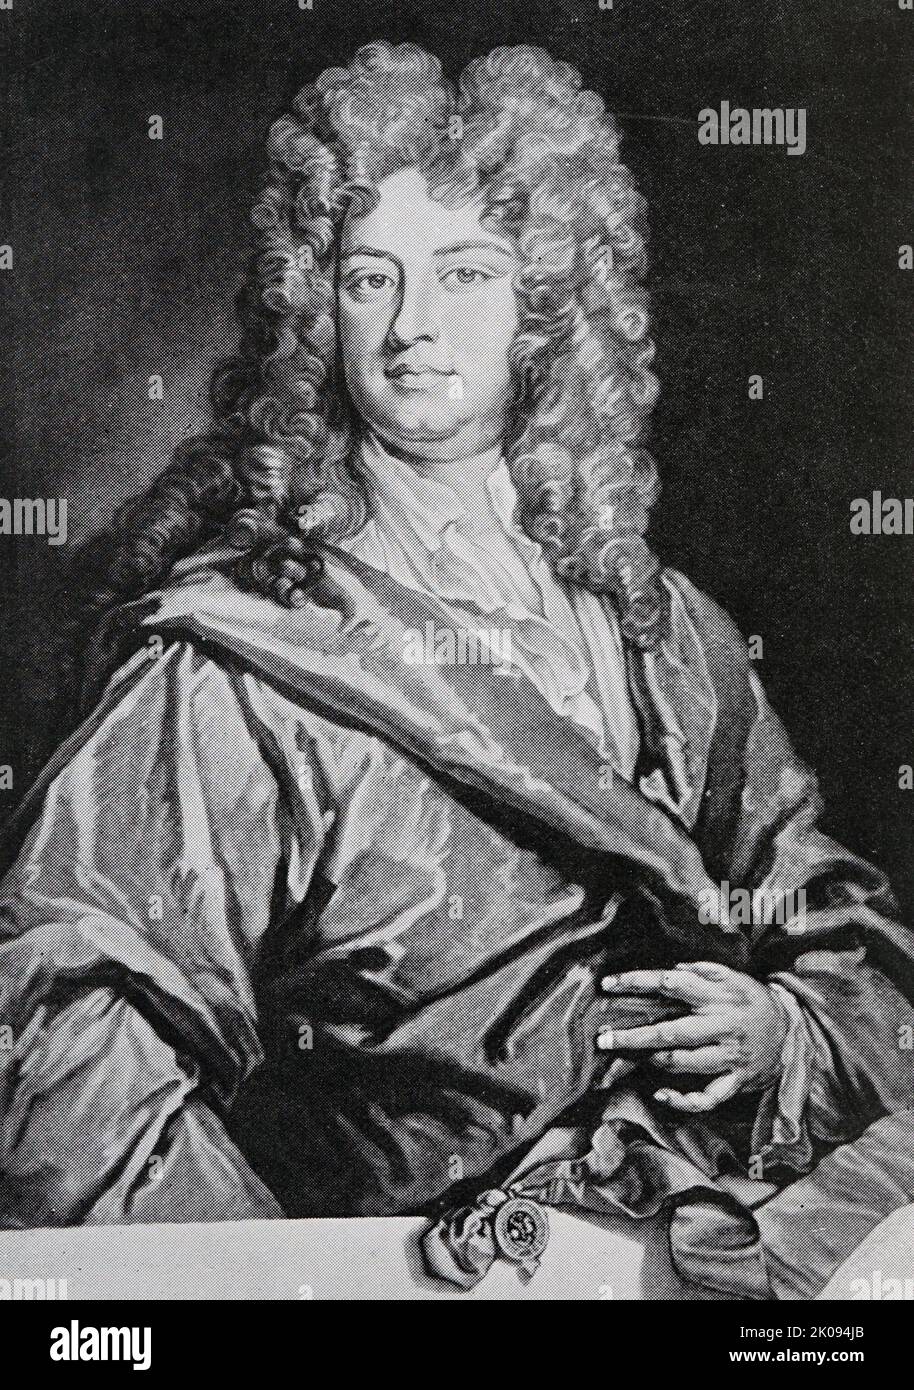 Druck von Charles Montague, Earl of Halifax, nach einem Gemälde von Kneller. Charles Montagu, 1. Earl of Halifax KG PC PRS (16. April 1661 - 19. Mai 1715) war ein englischer Staatsmann und Dichter. Stockfoto